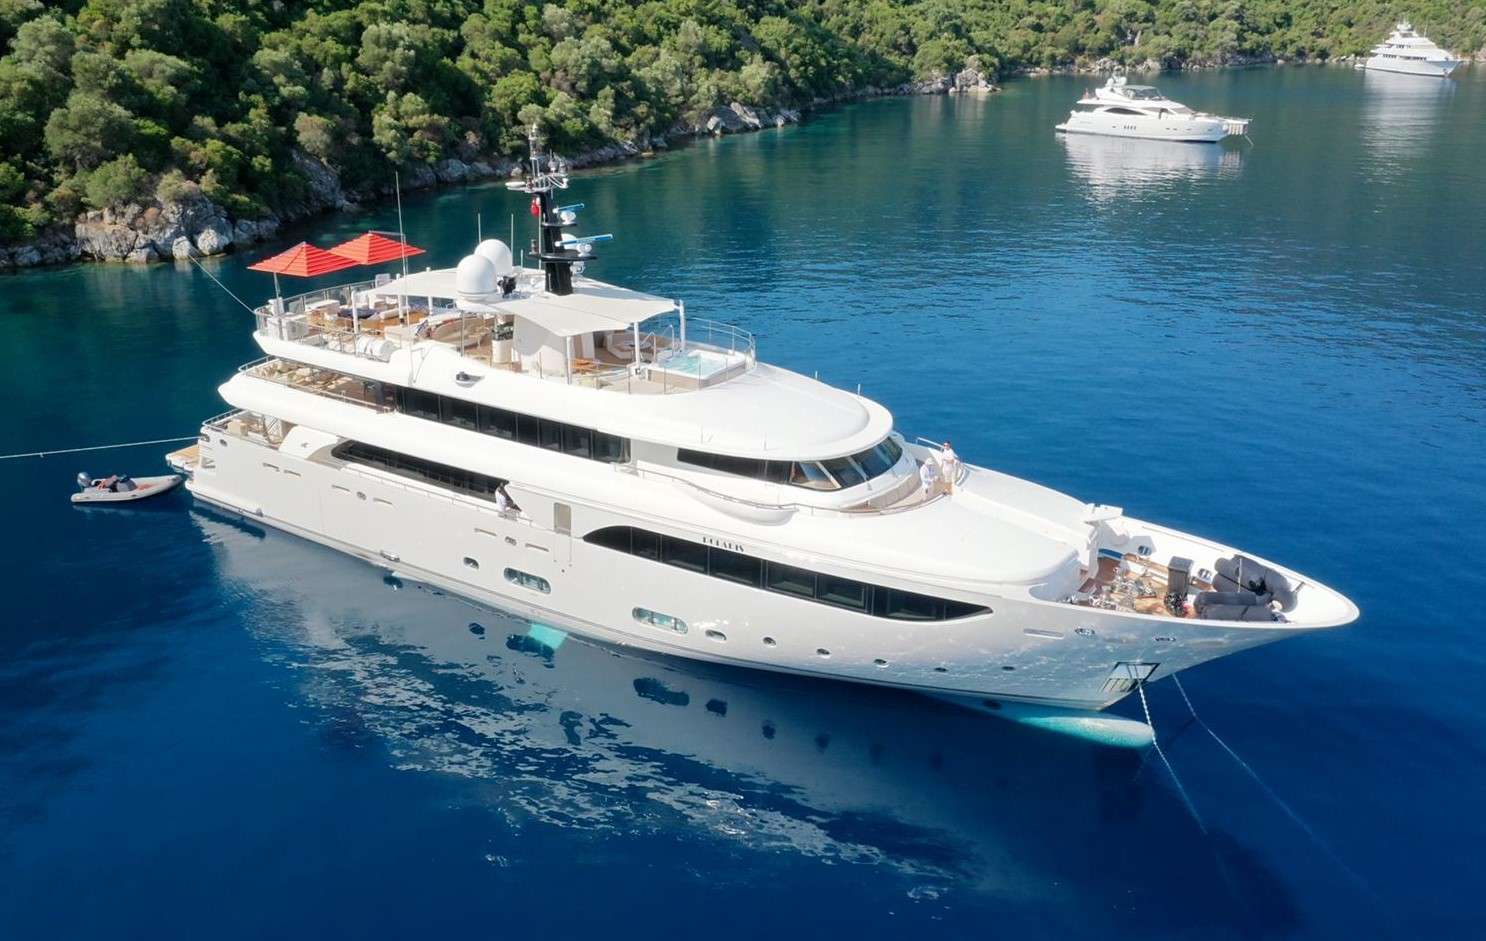 POLARIS - Yacht Charter Antalya & Boat hire in Croatia, Greece, Turkey 1